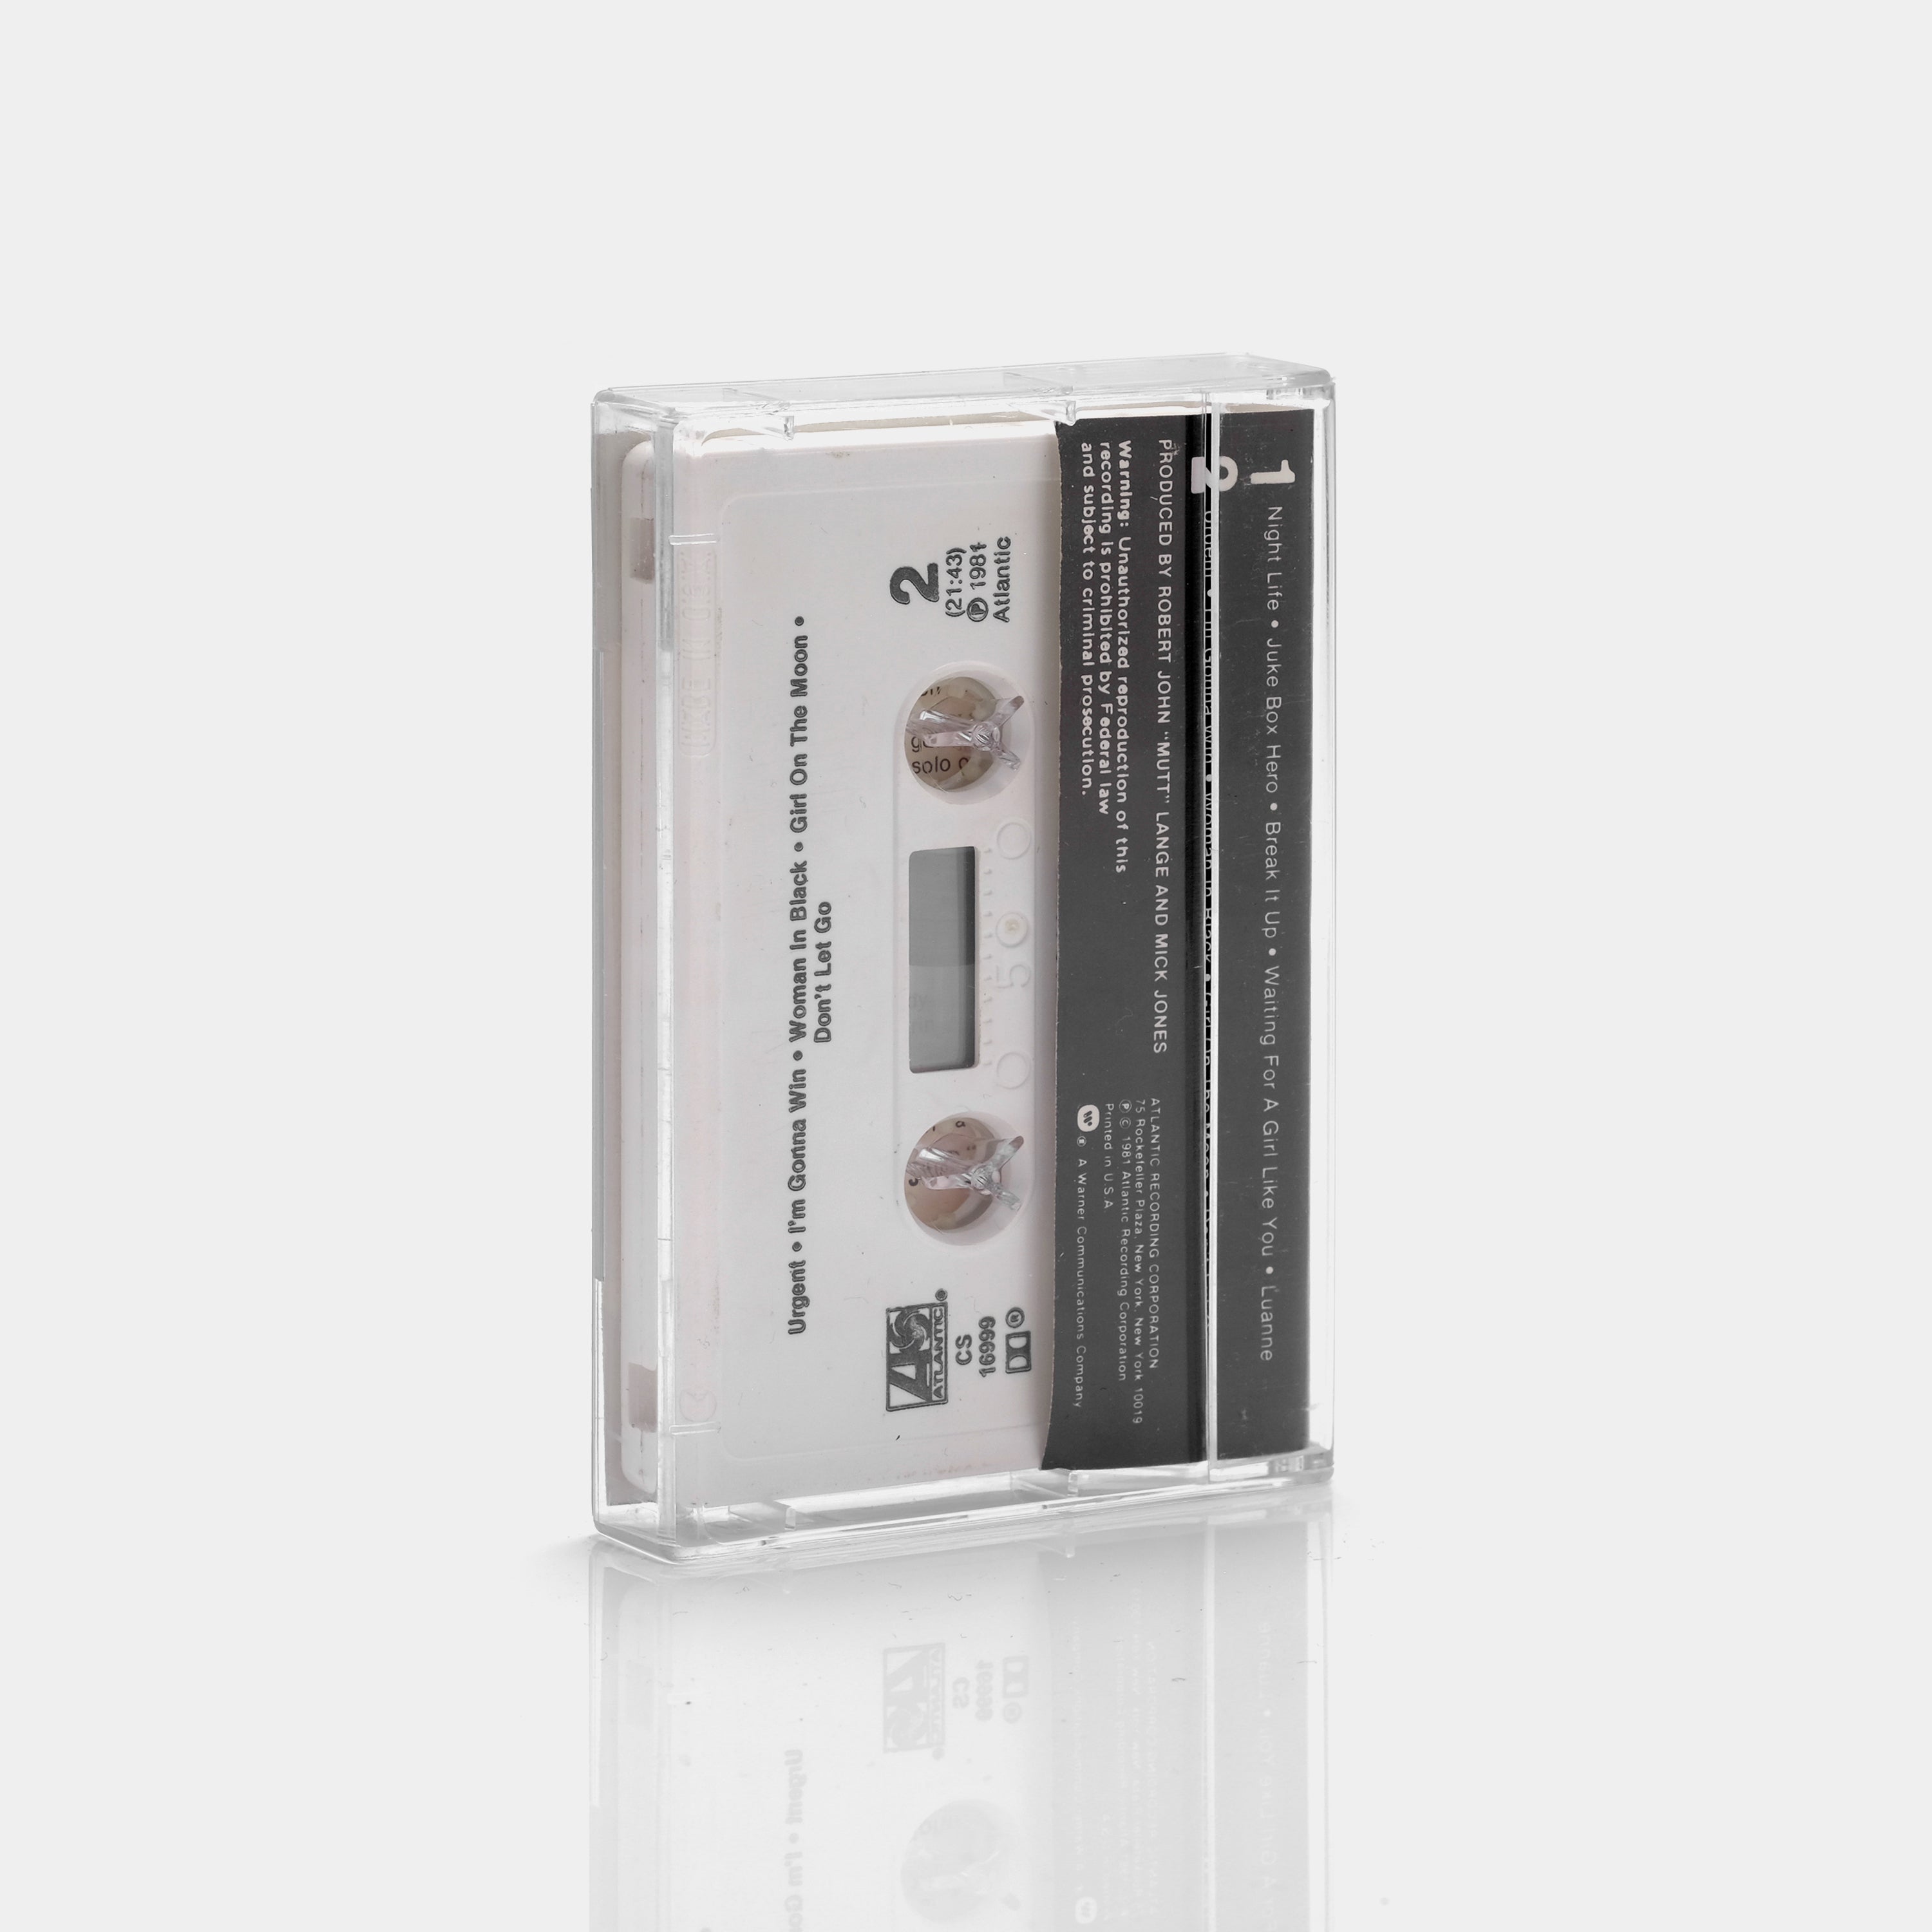 Foreigner - 4 Cassette Tape